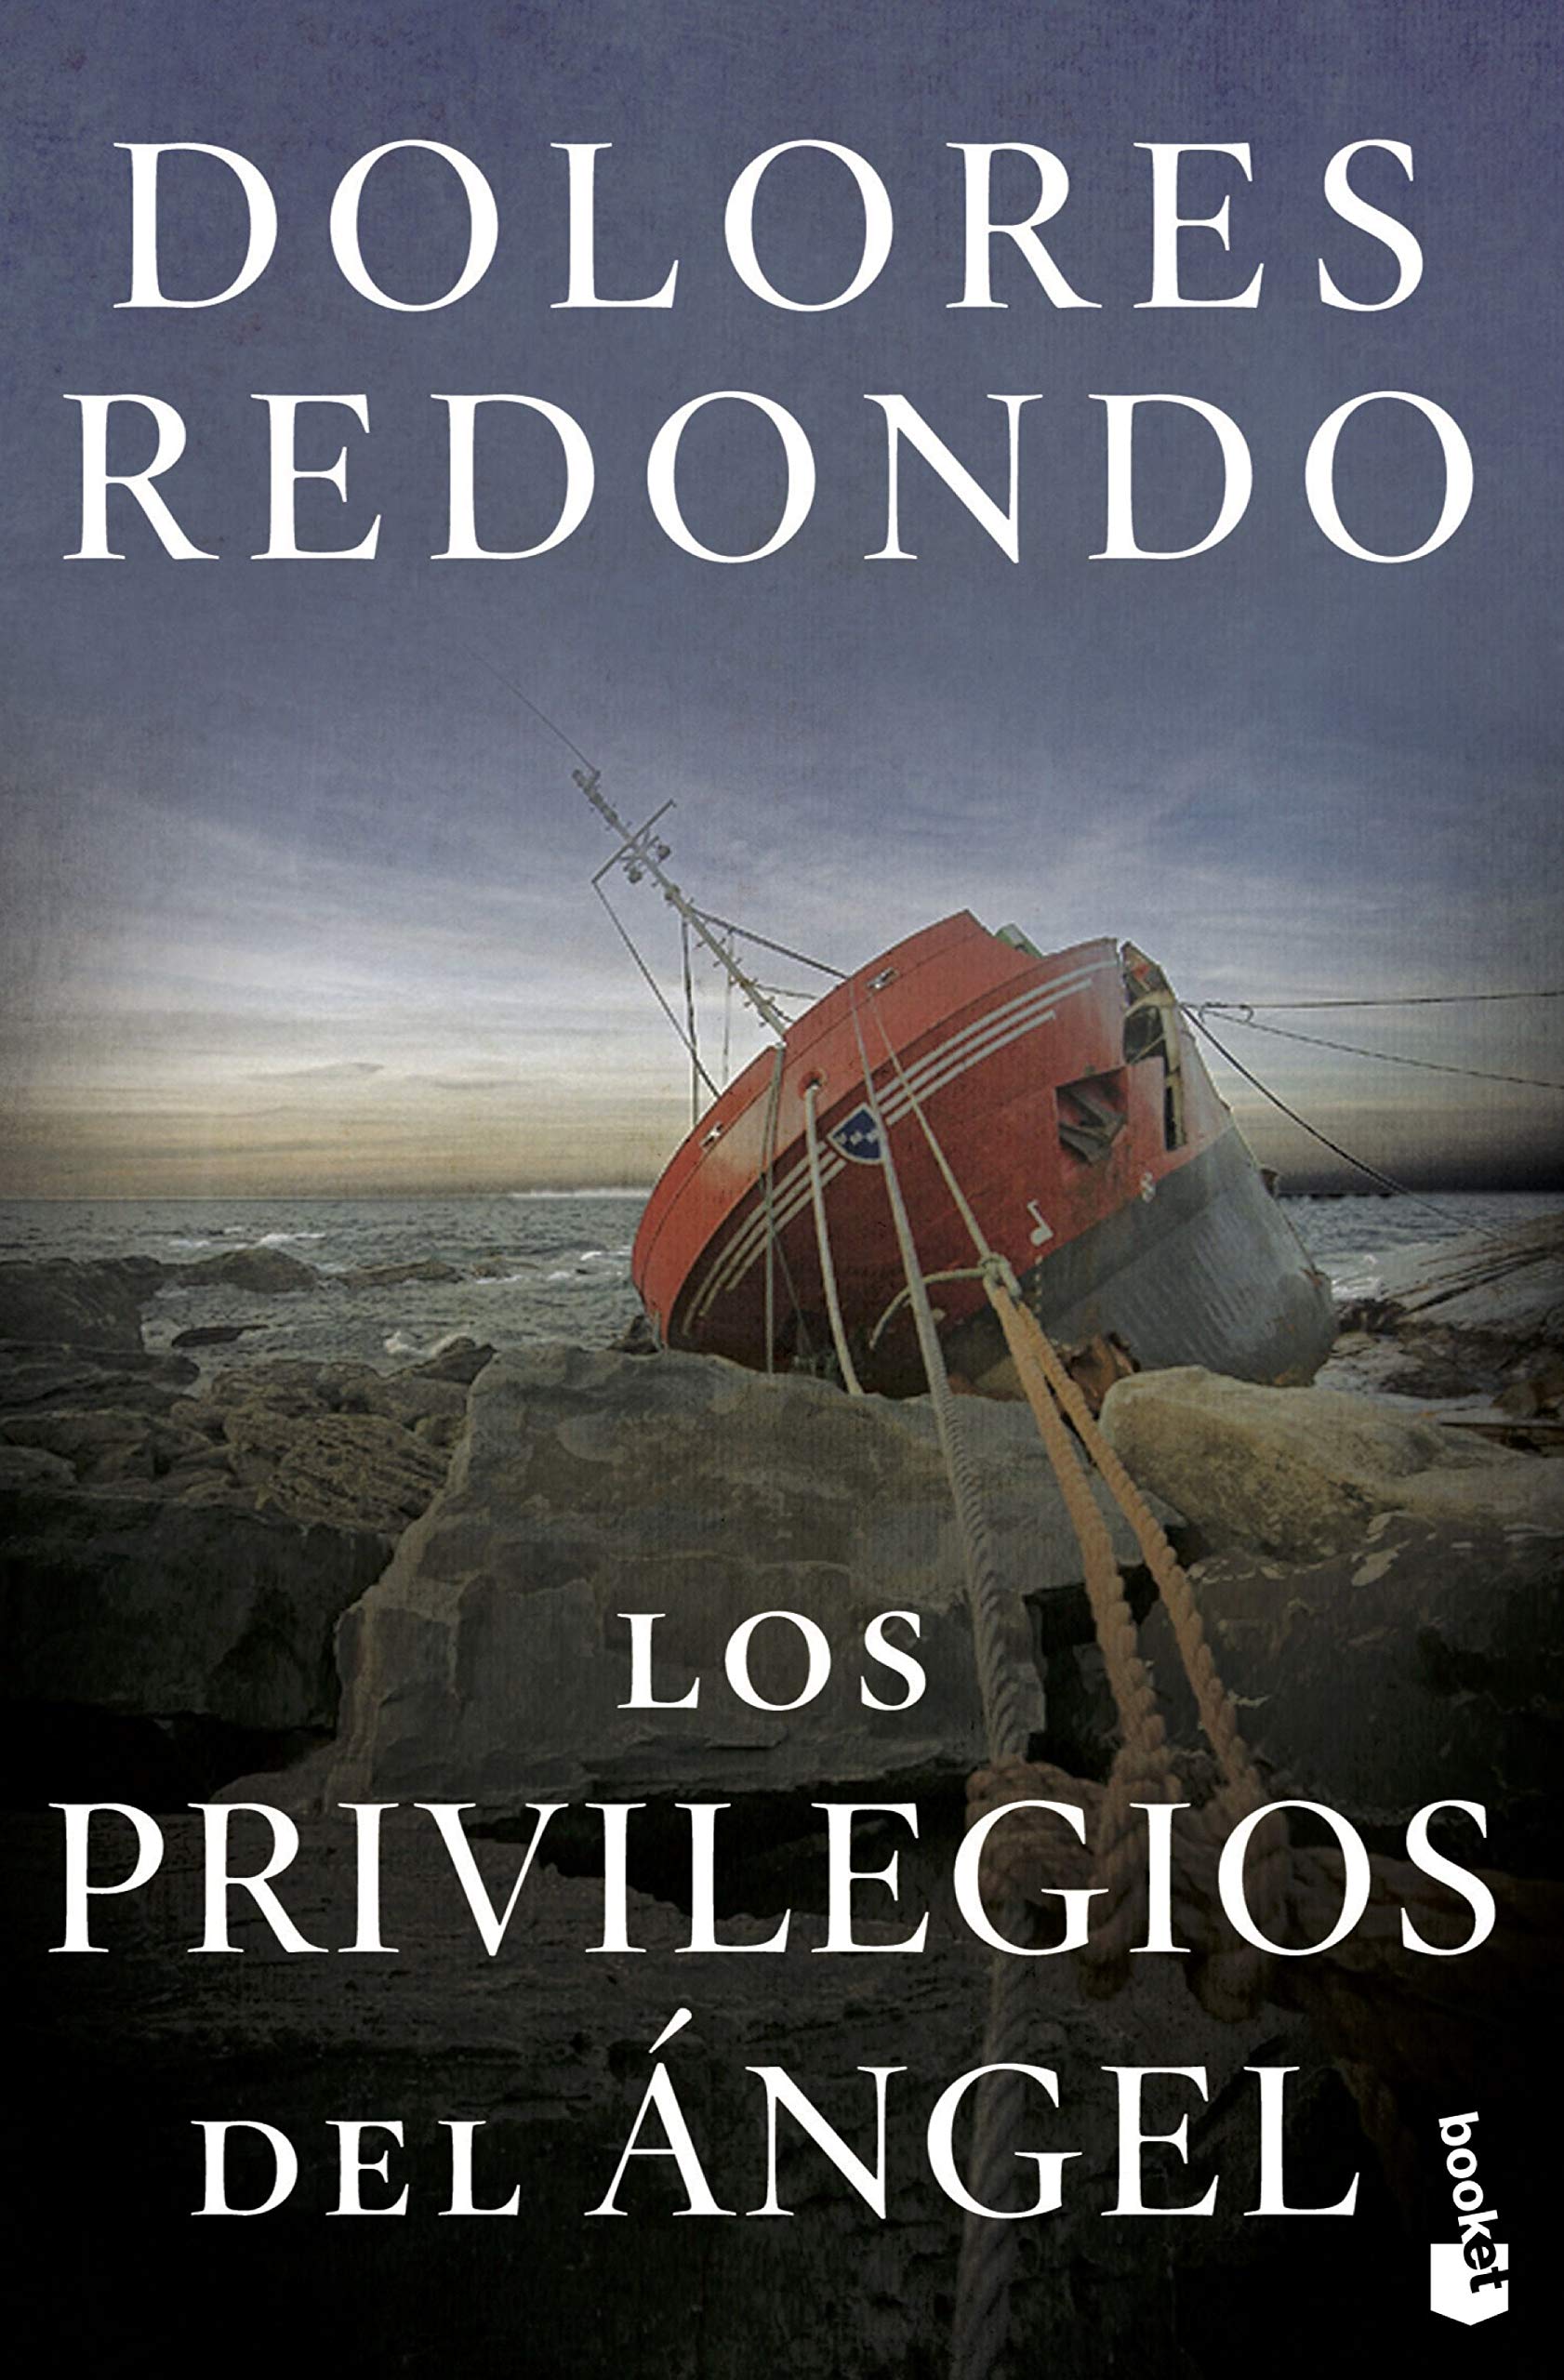 «Los privilegios del ángel», la novela de Dolores Redondo antes del Baztán